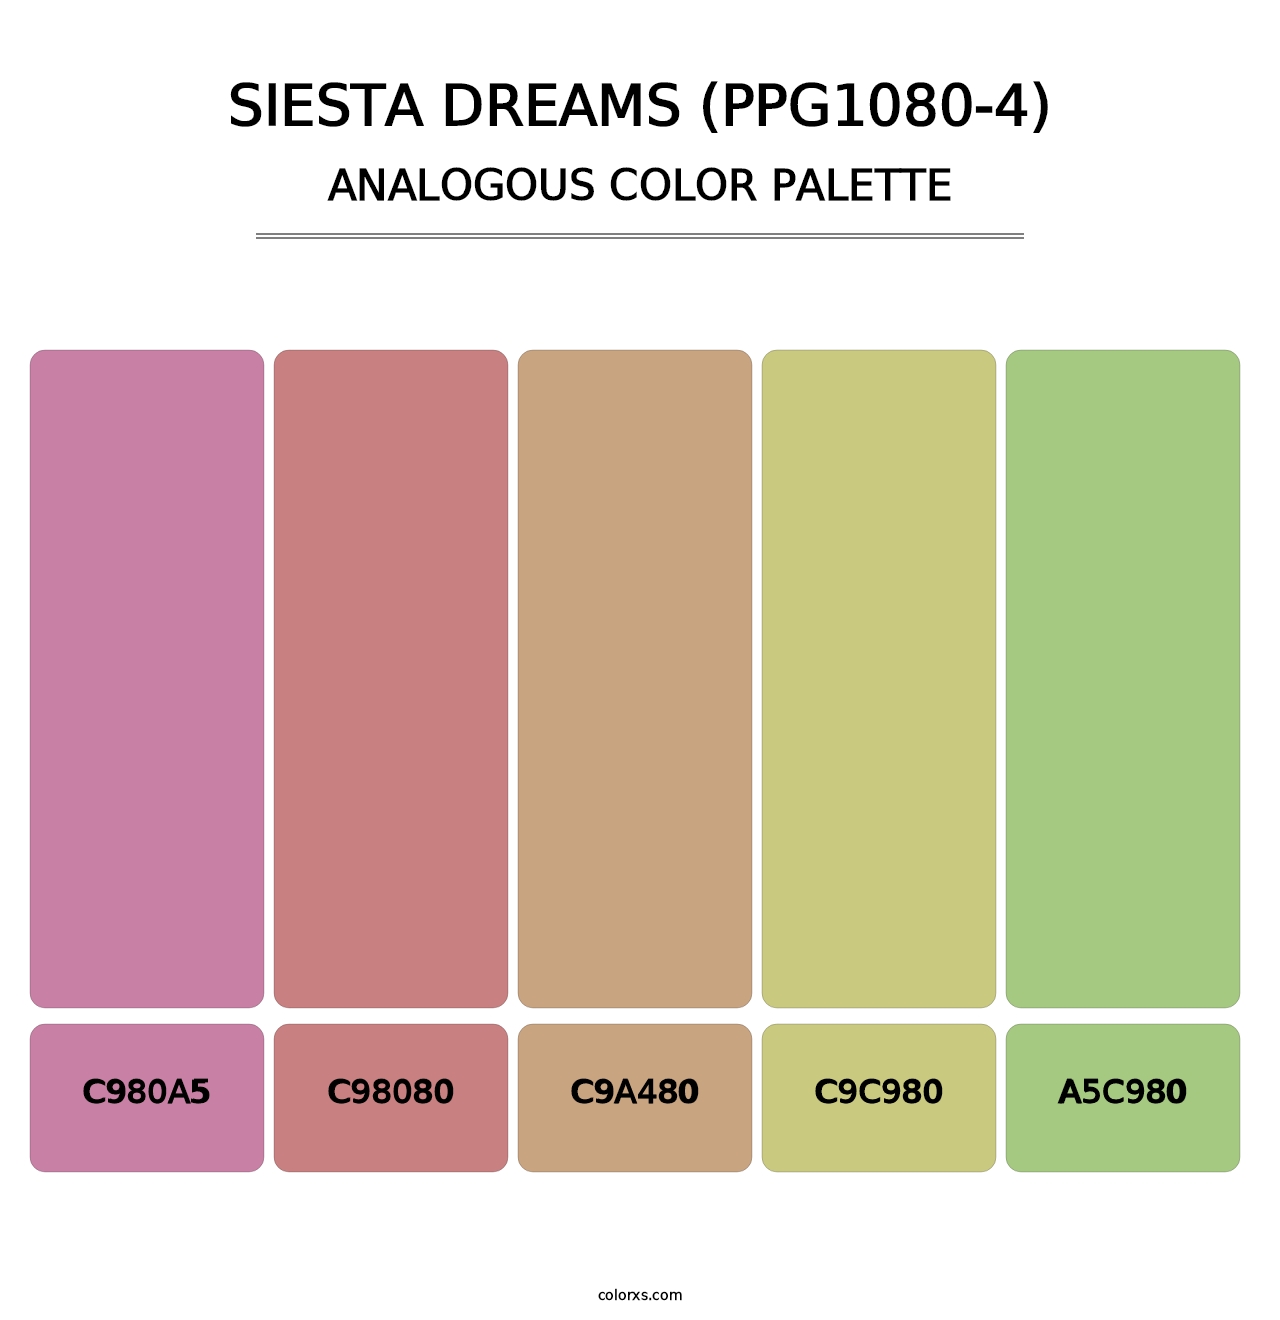 Siesta Dreams (PPG1080-4) - Analogous Color Palette